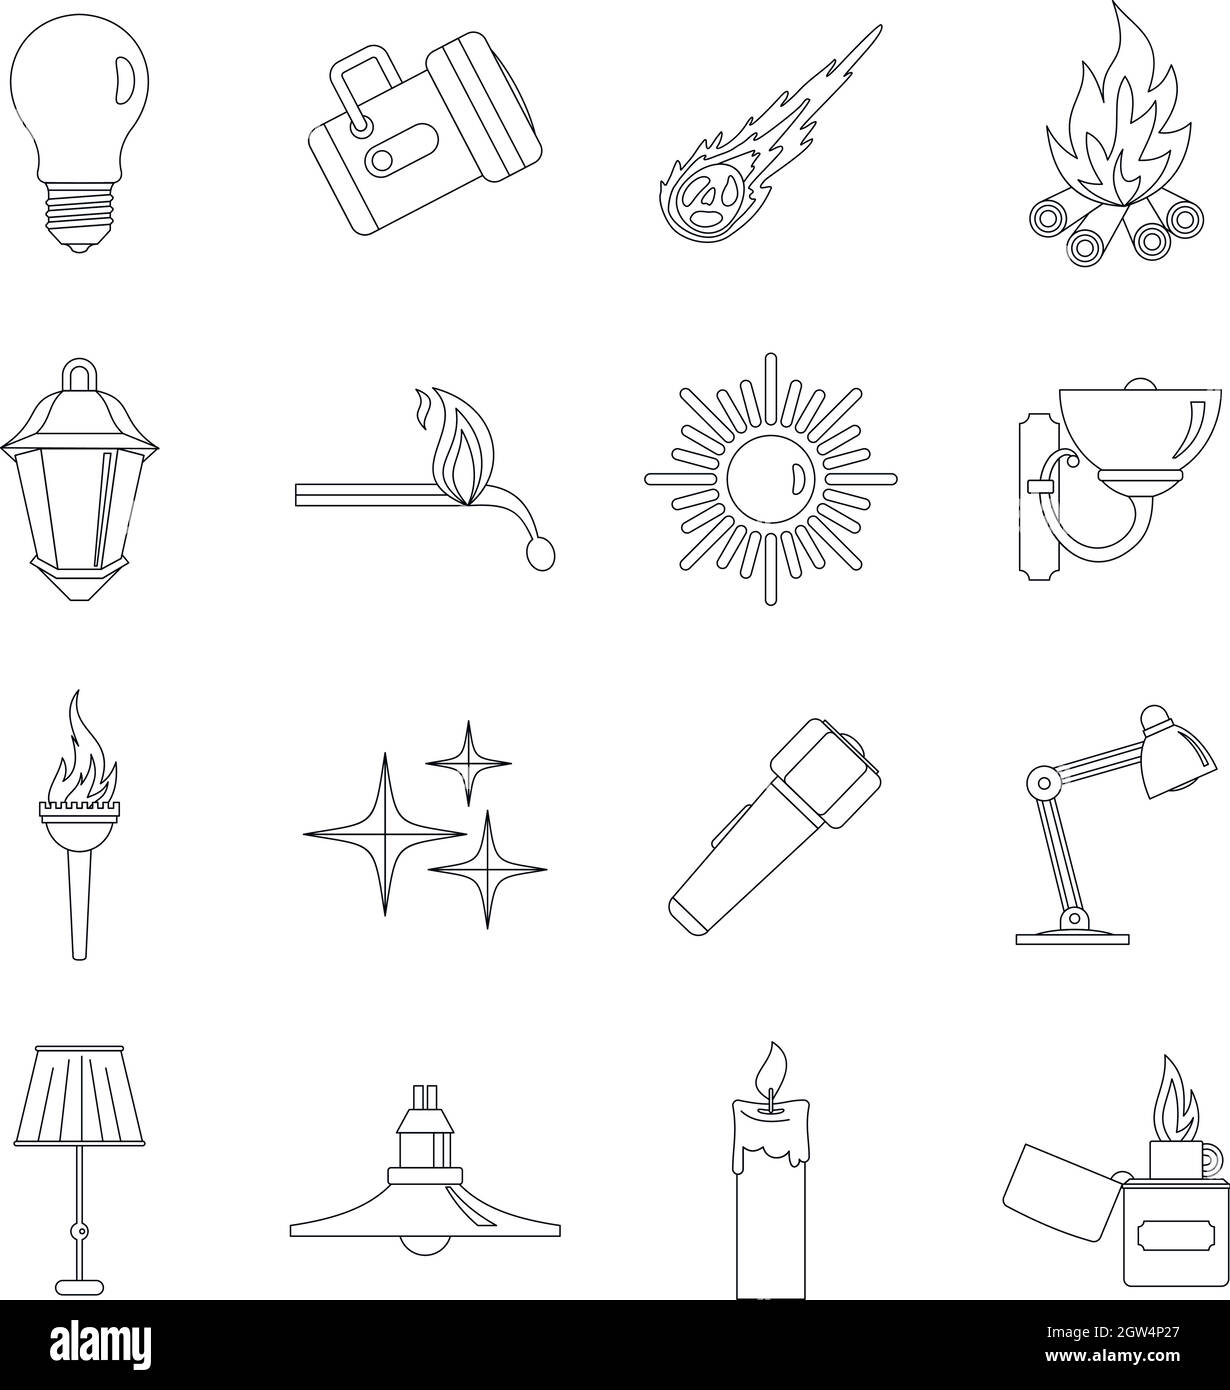 La sorgente di luce simboli set di icone di stile di contorno Illustrazione Vettoriale